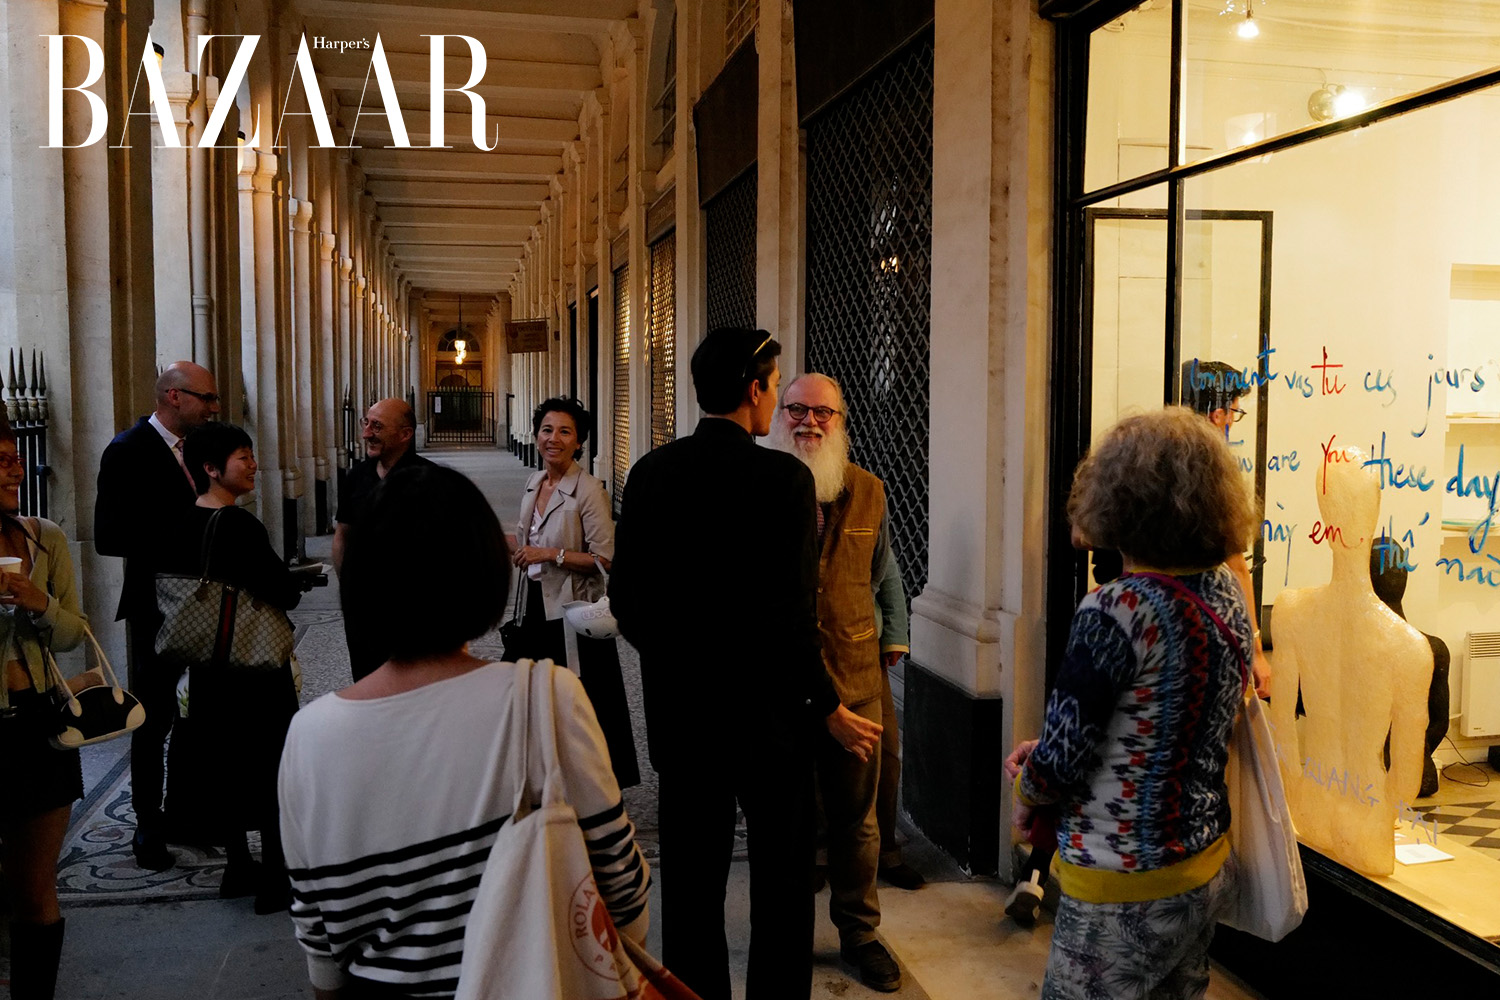 Harper's Bazaar_Quang Đại mở triển lãm How are you these days tại Pháp_02